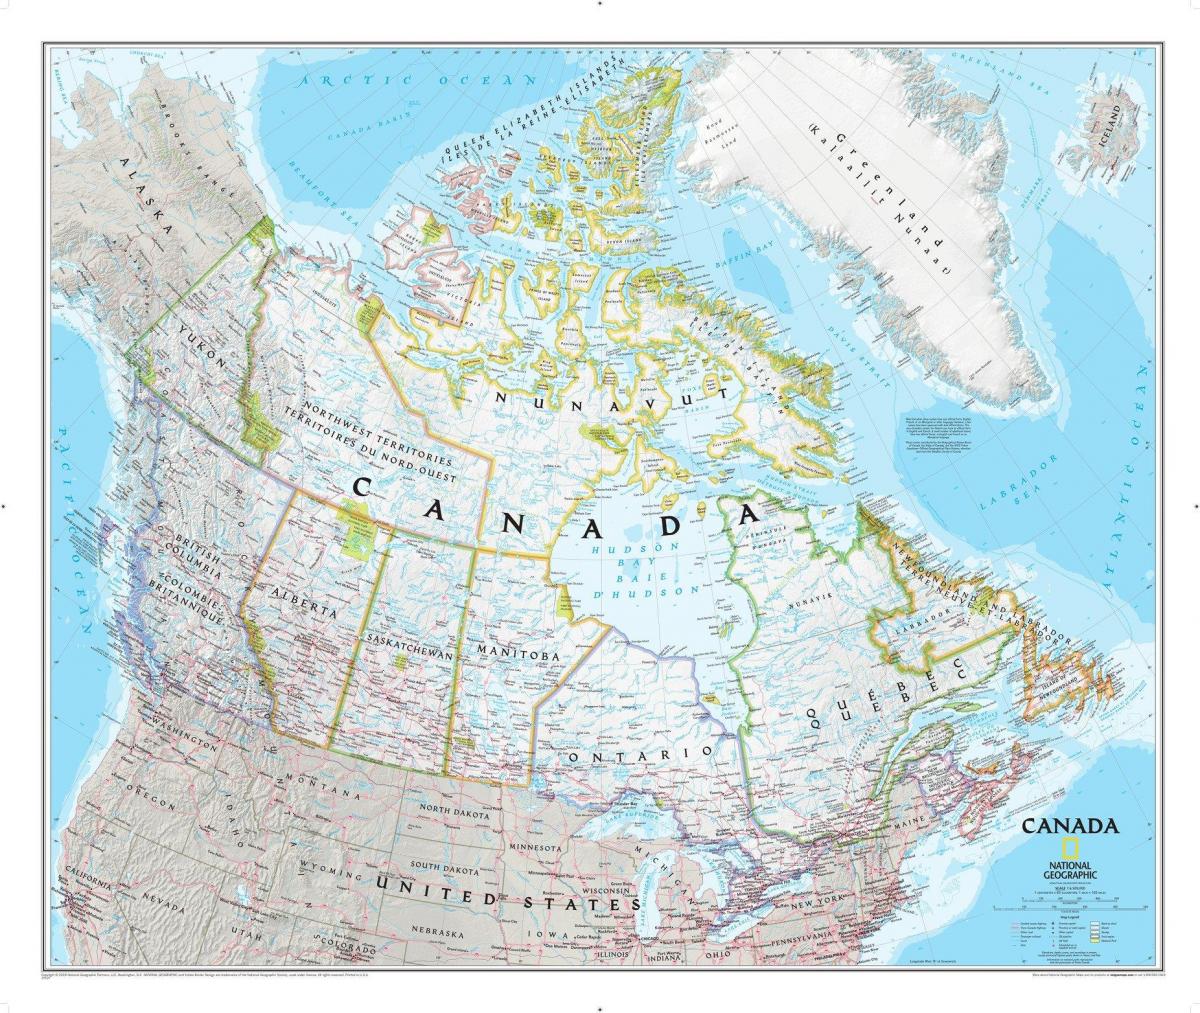 Carte des régions du Canada